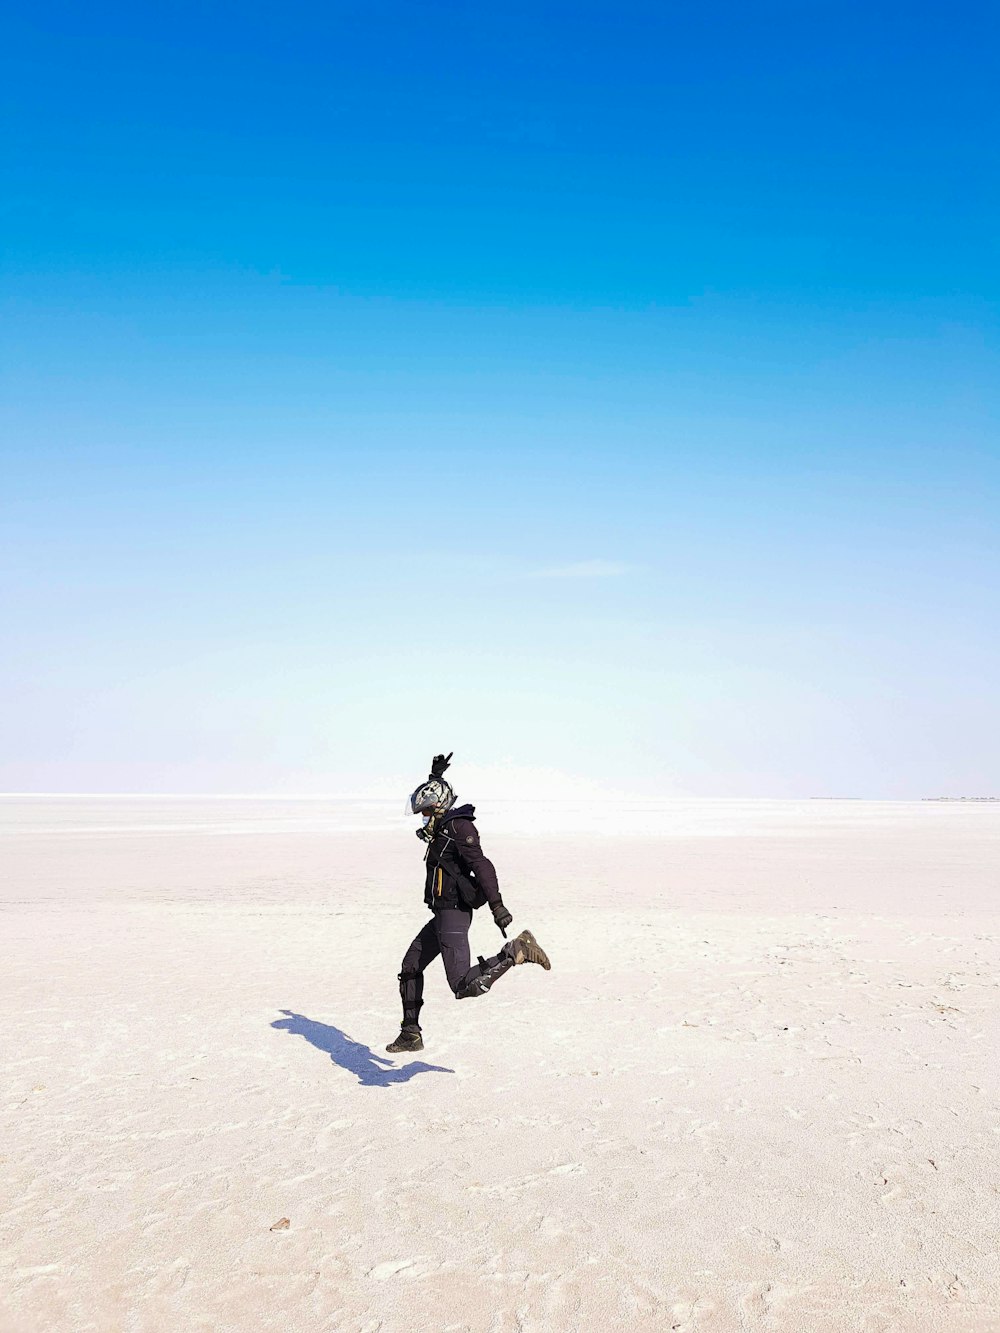 a man running across a sandy plain under a blue sky